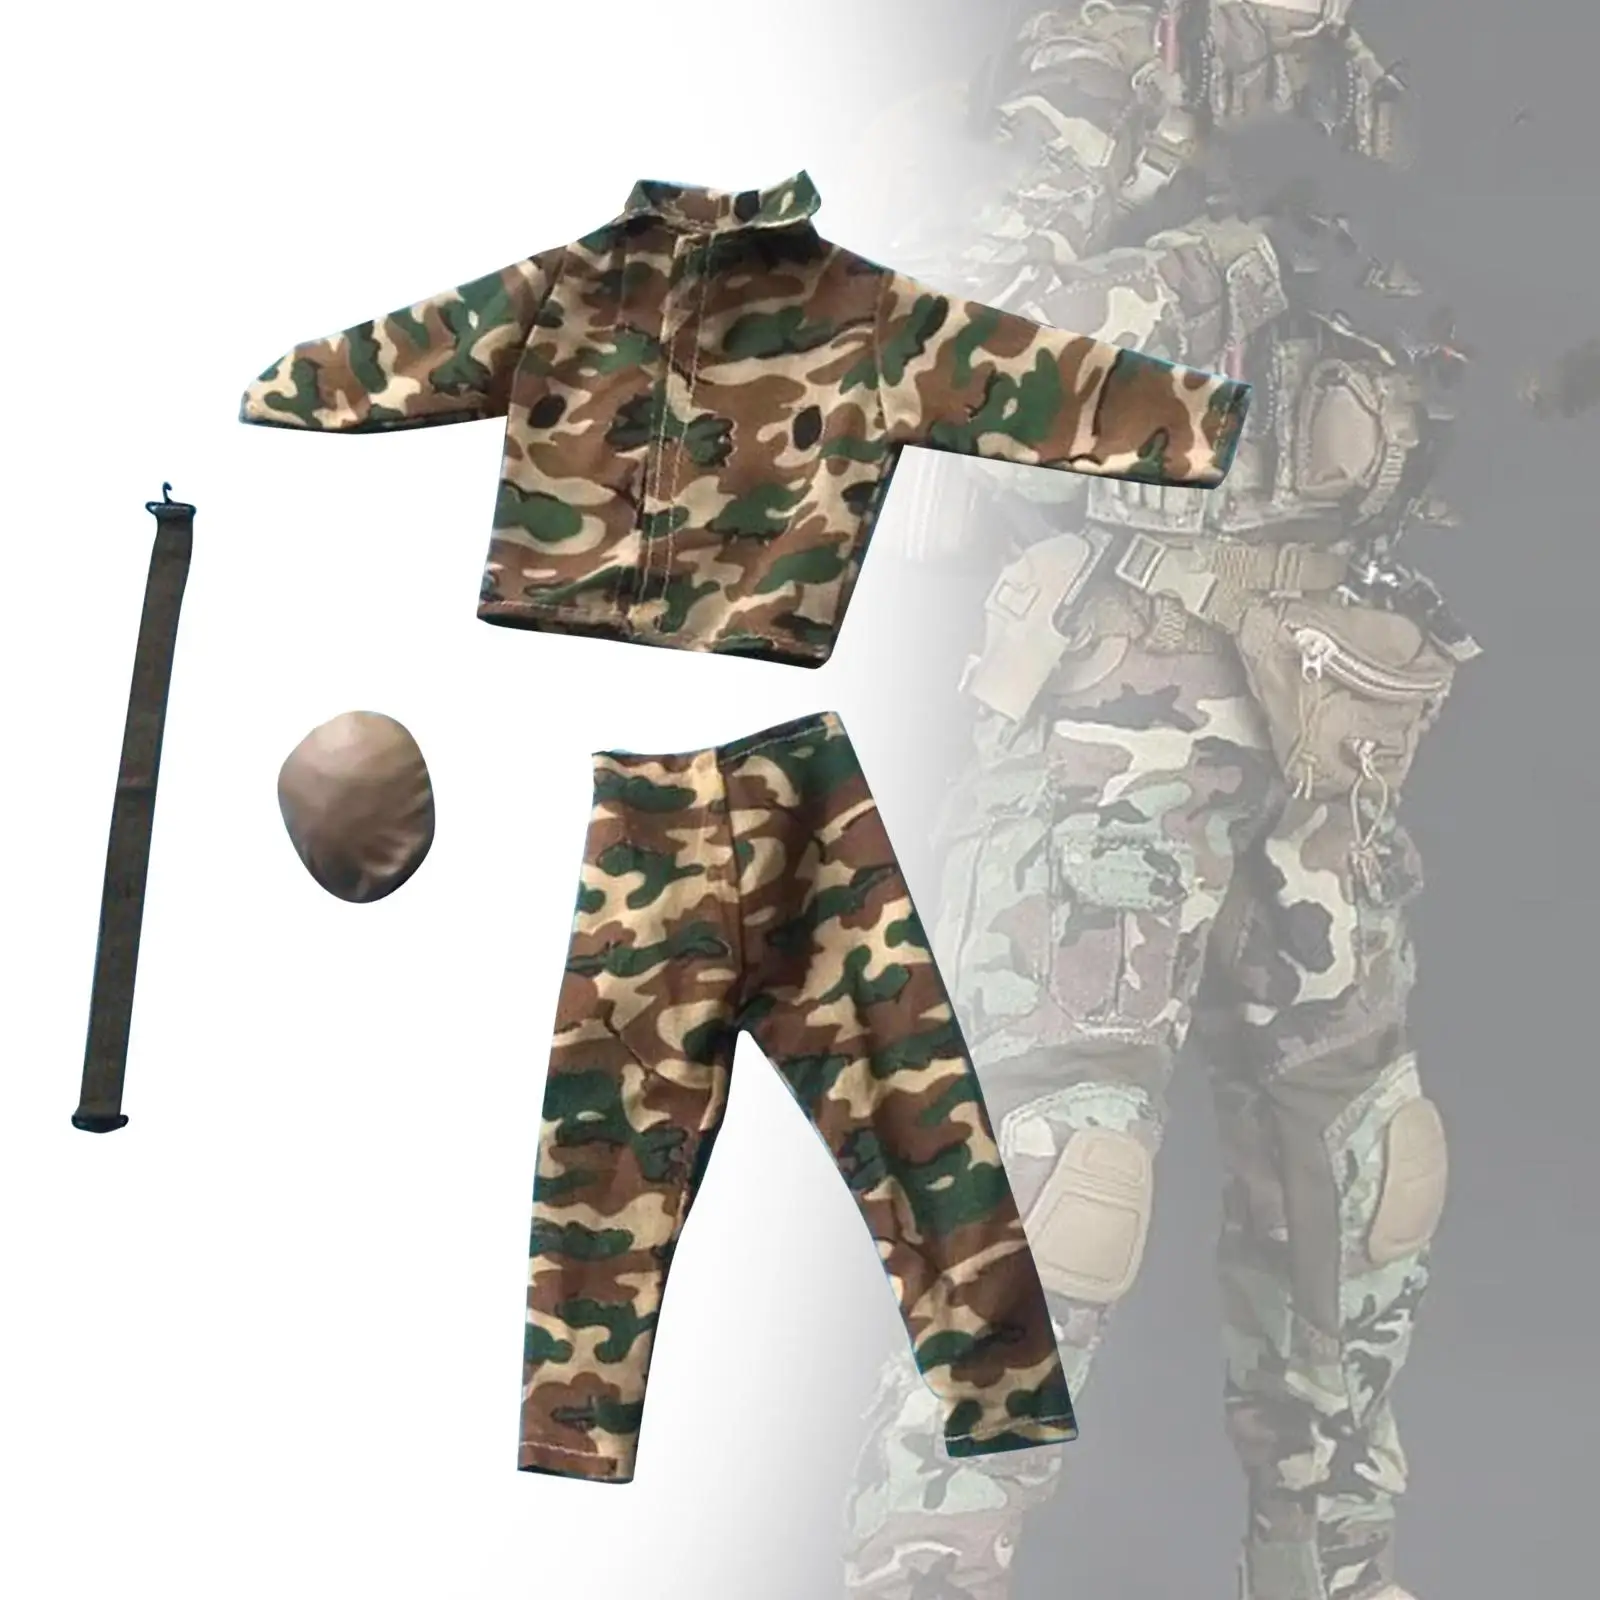 

Мужская одежда для кукол в масштабе 1:6, куртка и брюки, стильная индийская традиционная одежда в масштабе 1/6 для 12-дюймовых фигурок солдат